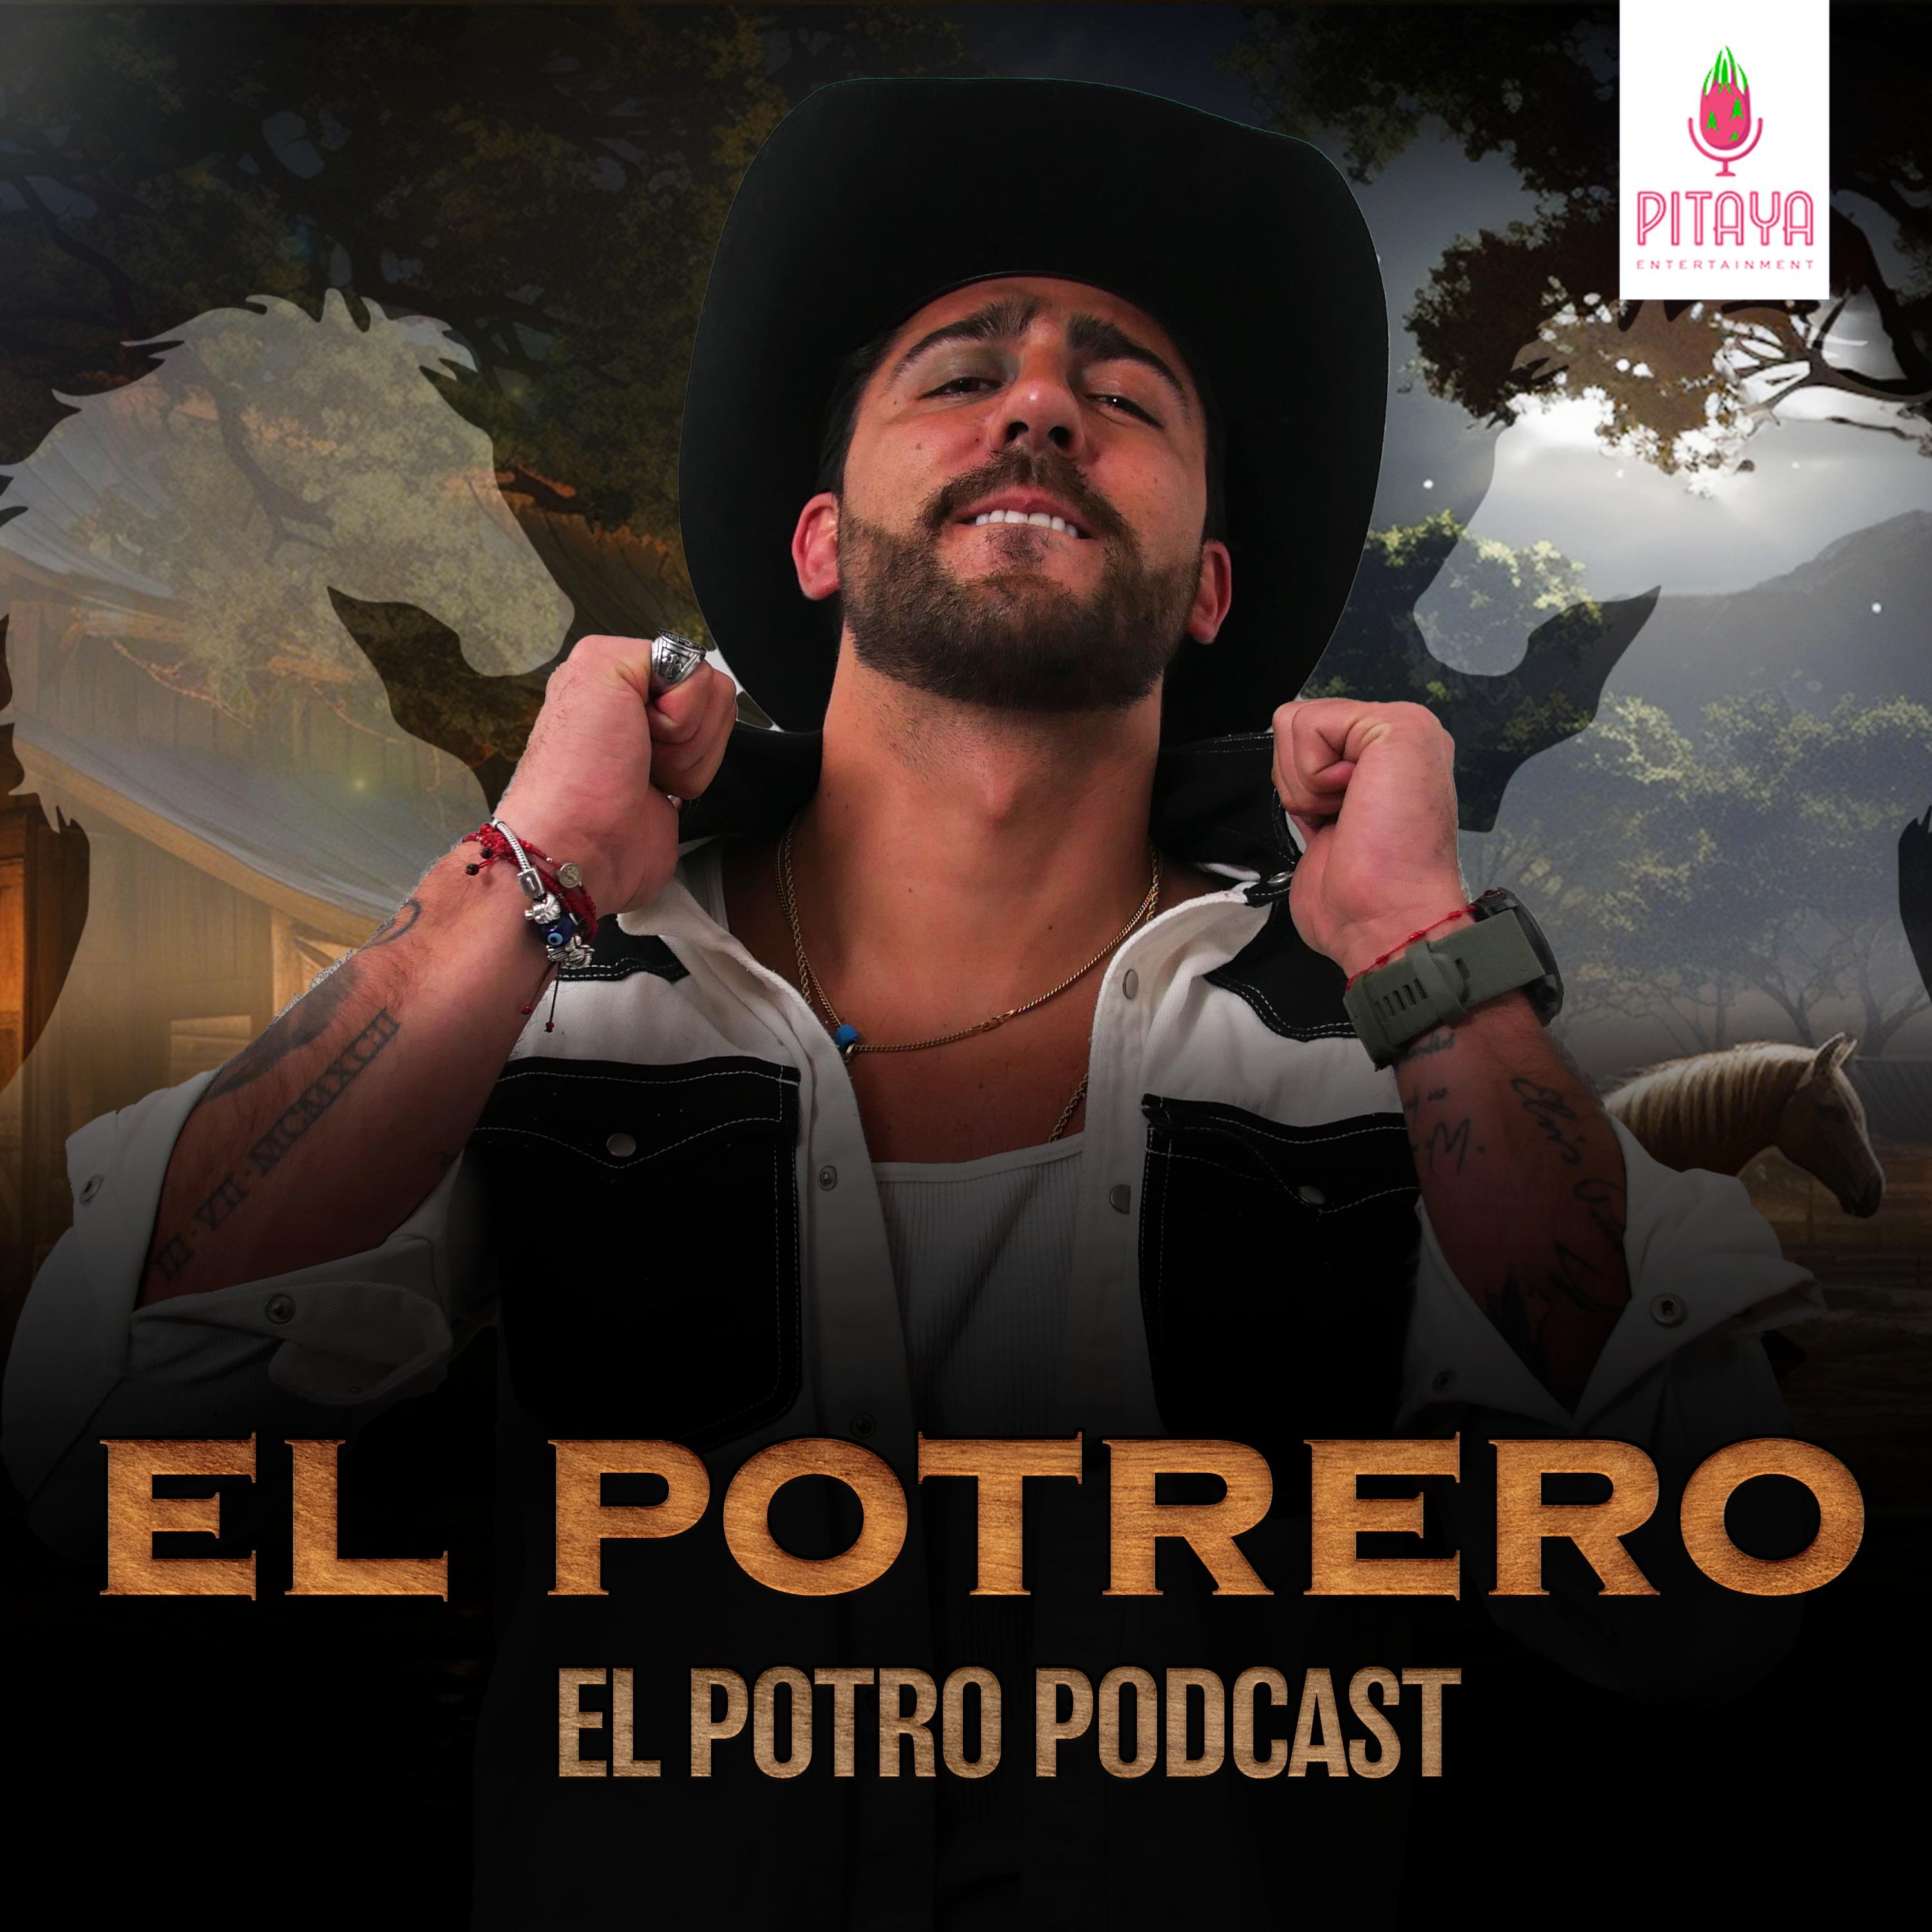 Show poster of El Potrero